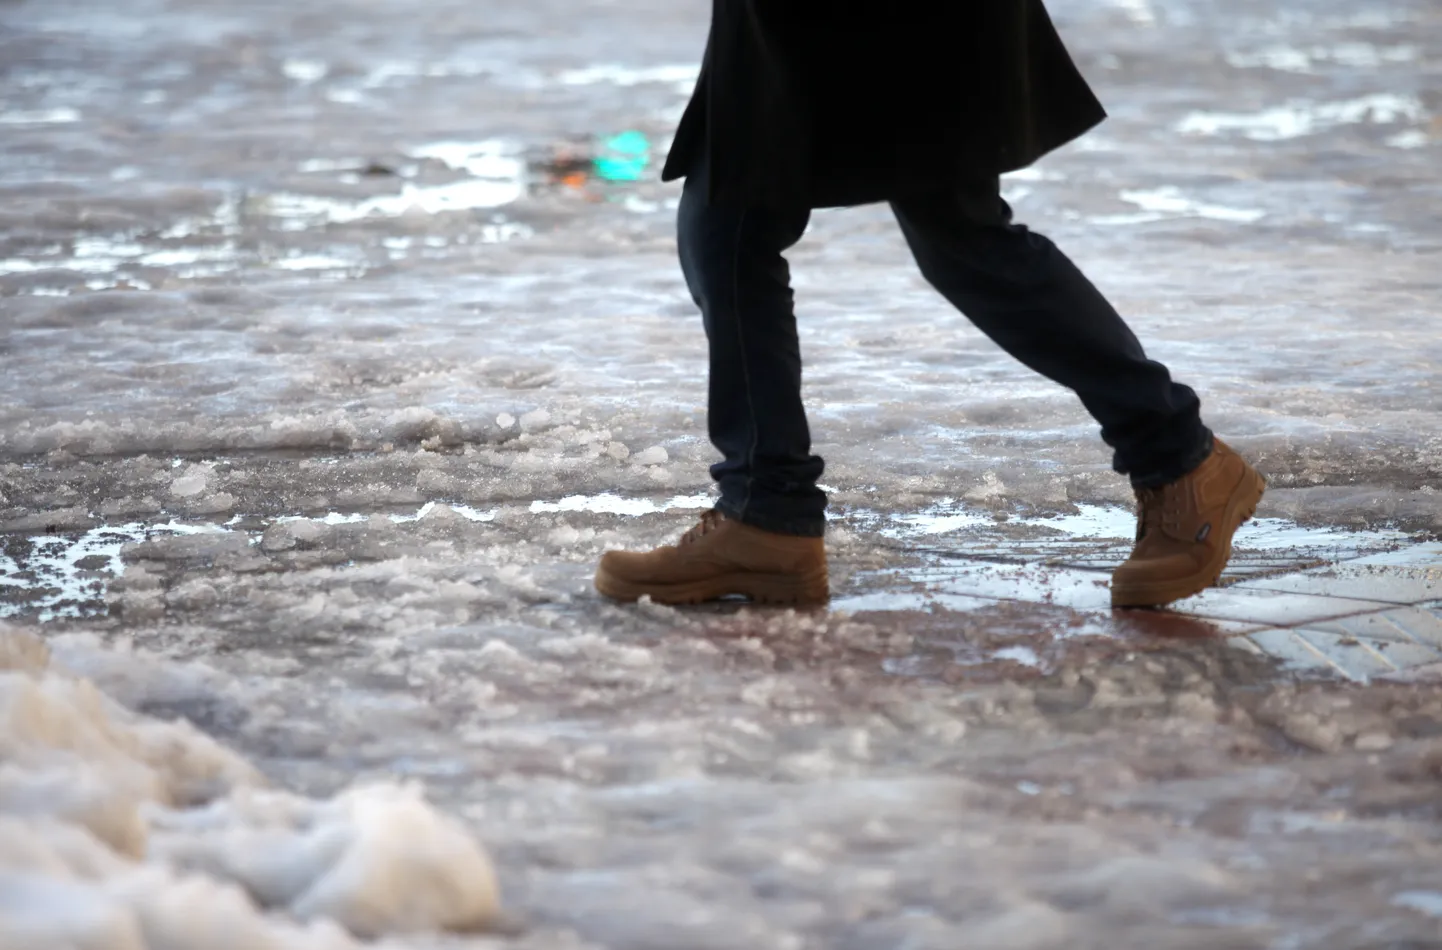 Cilvēka kājas un izkusušais sniegs uz ietves; ilustratīvs foto.